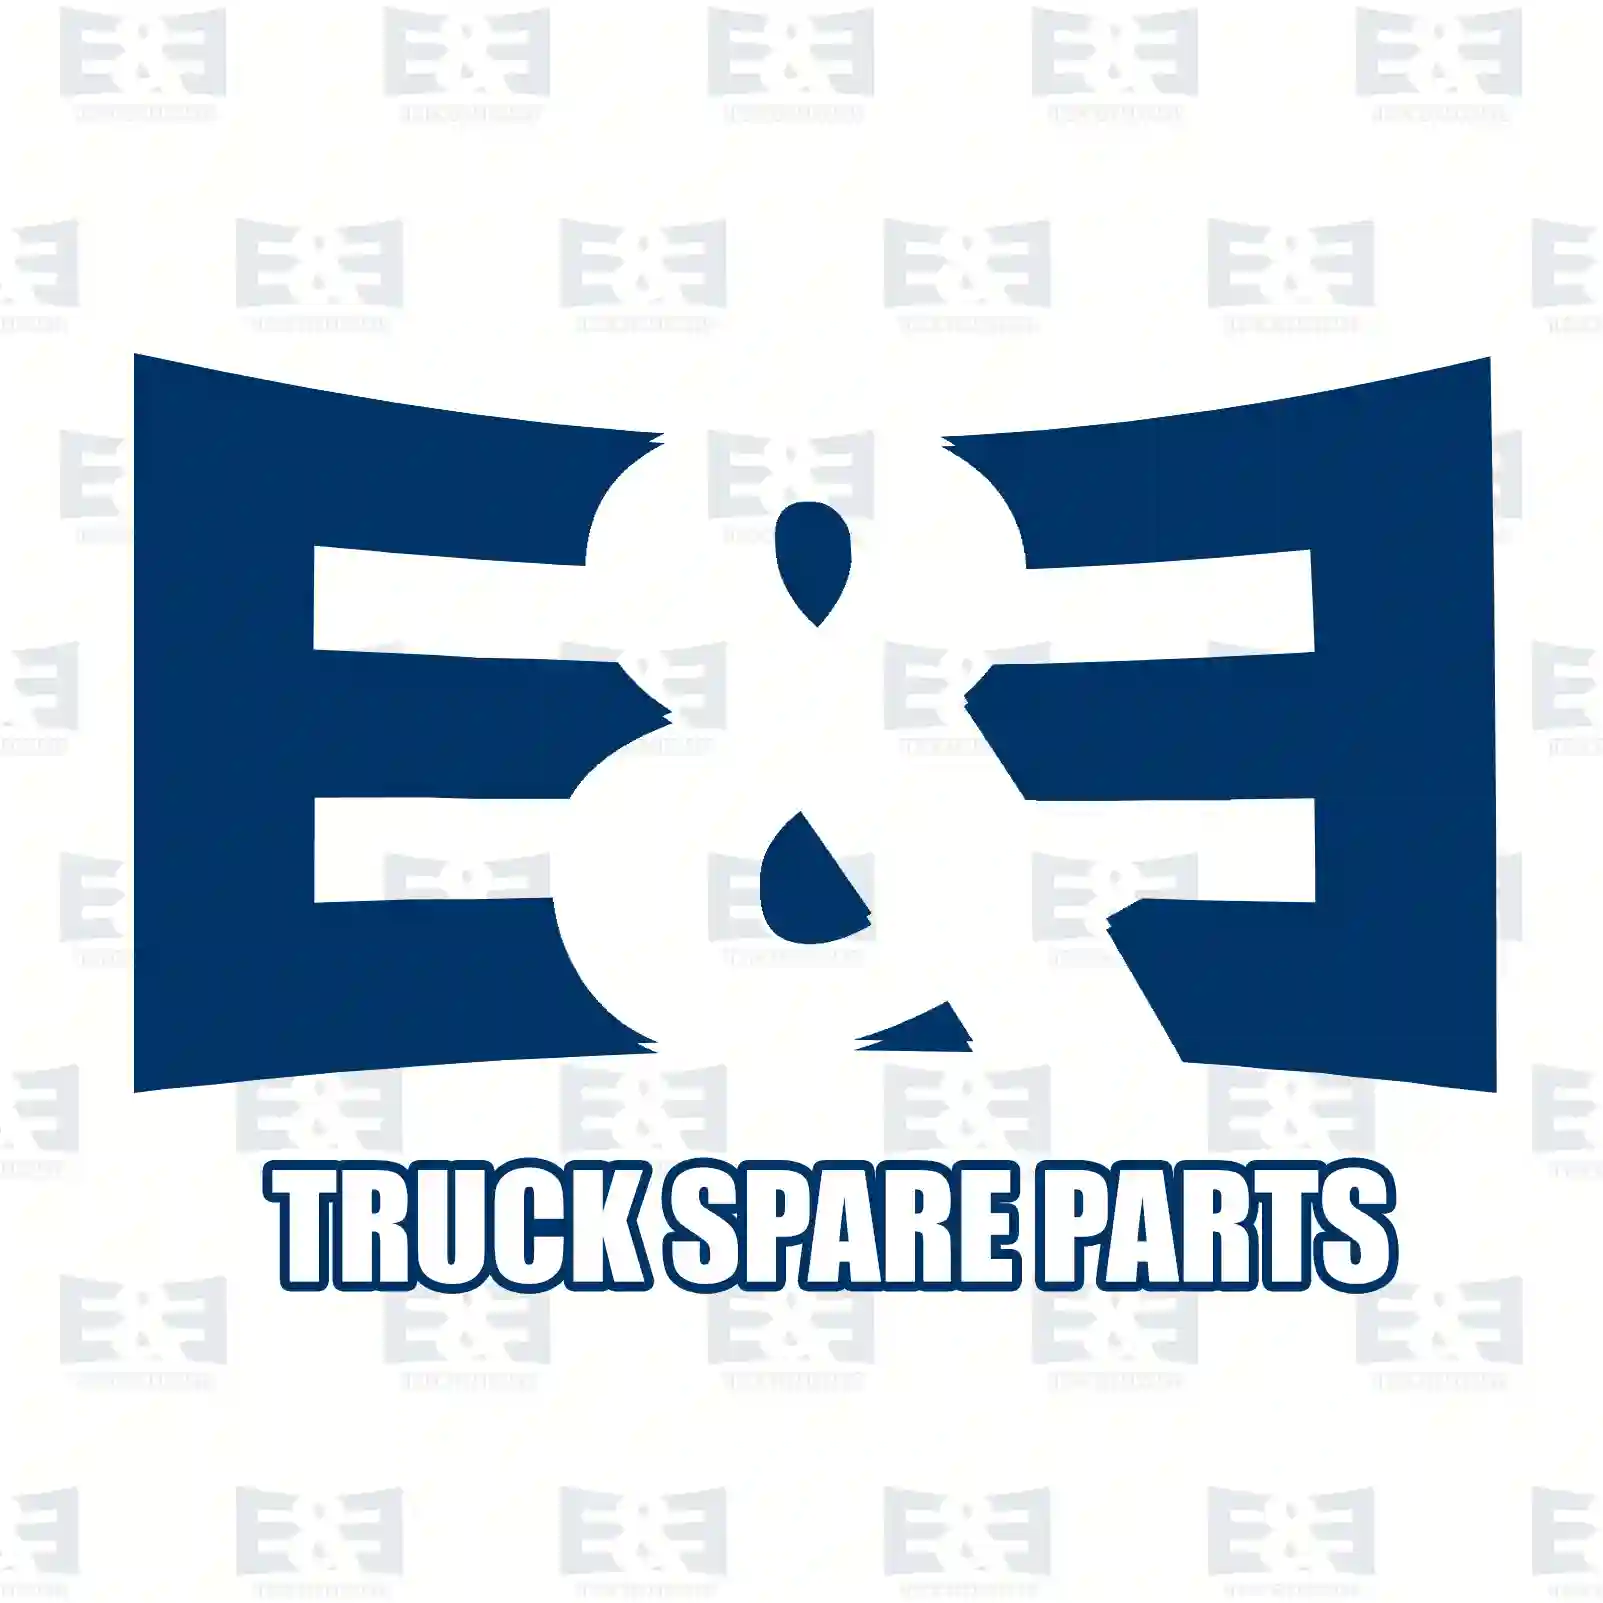 Clutch servo, 2E2288260, 5001866284, 50105 ||  2E2288260 E&E Truck Spare Parts | Truck Spare Parts, Auotomotive Spare Parts Clutch servo, 2E2288260, 5001866284, 50105 ||  2E2288260 E&E Truck Spare Parts | Truck Spare Parts, Auotomotive Spare Parts